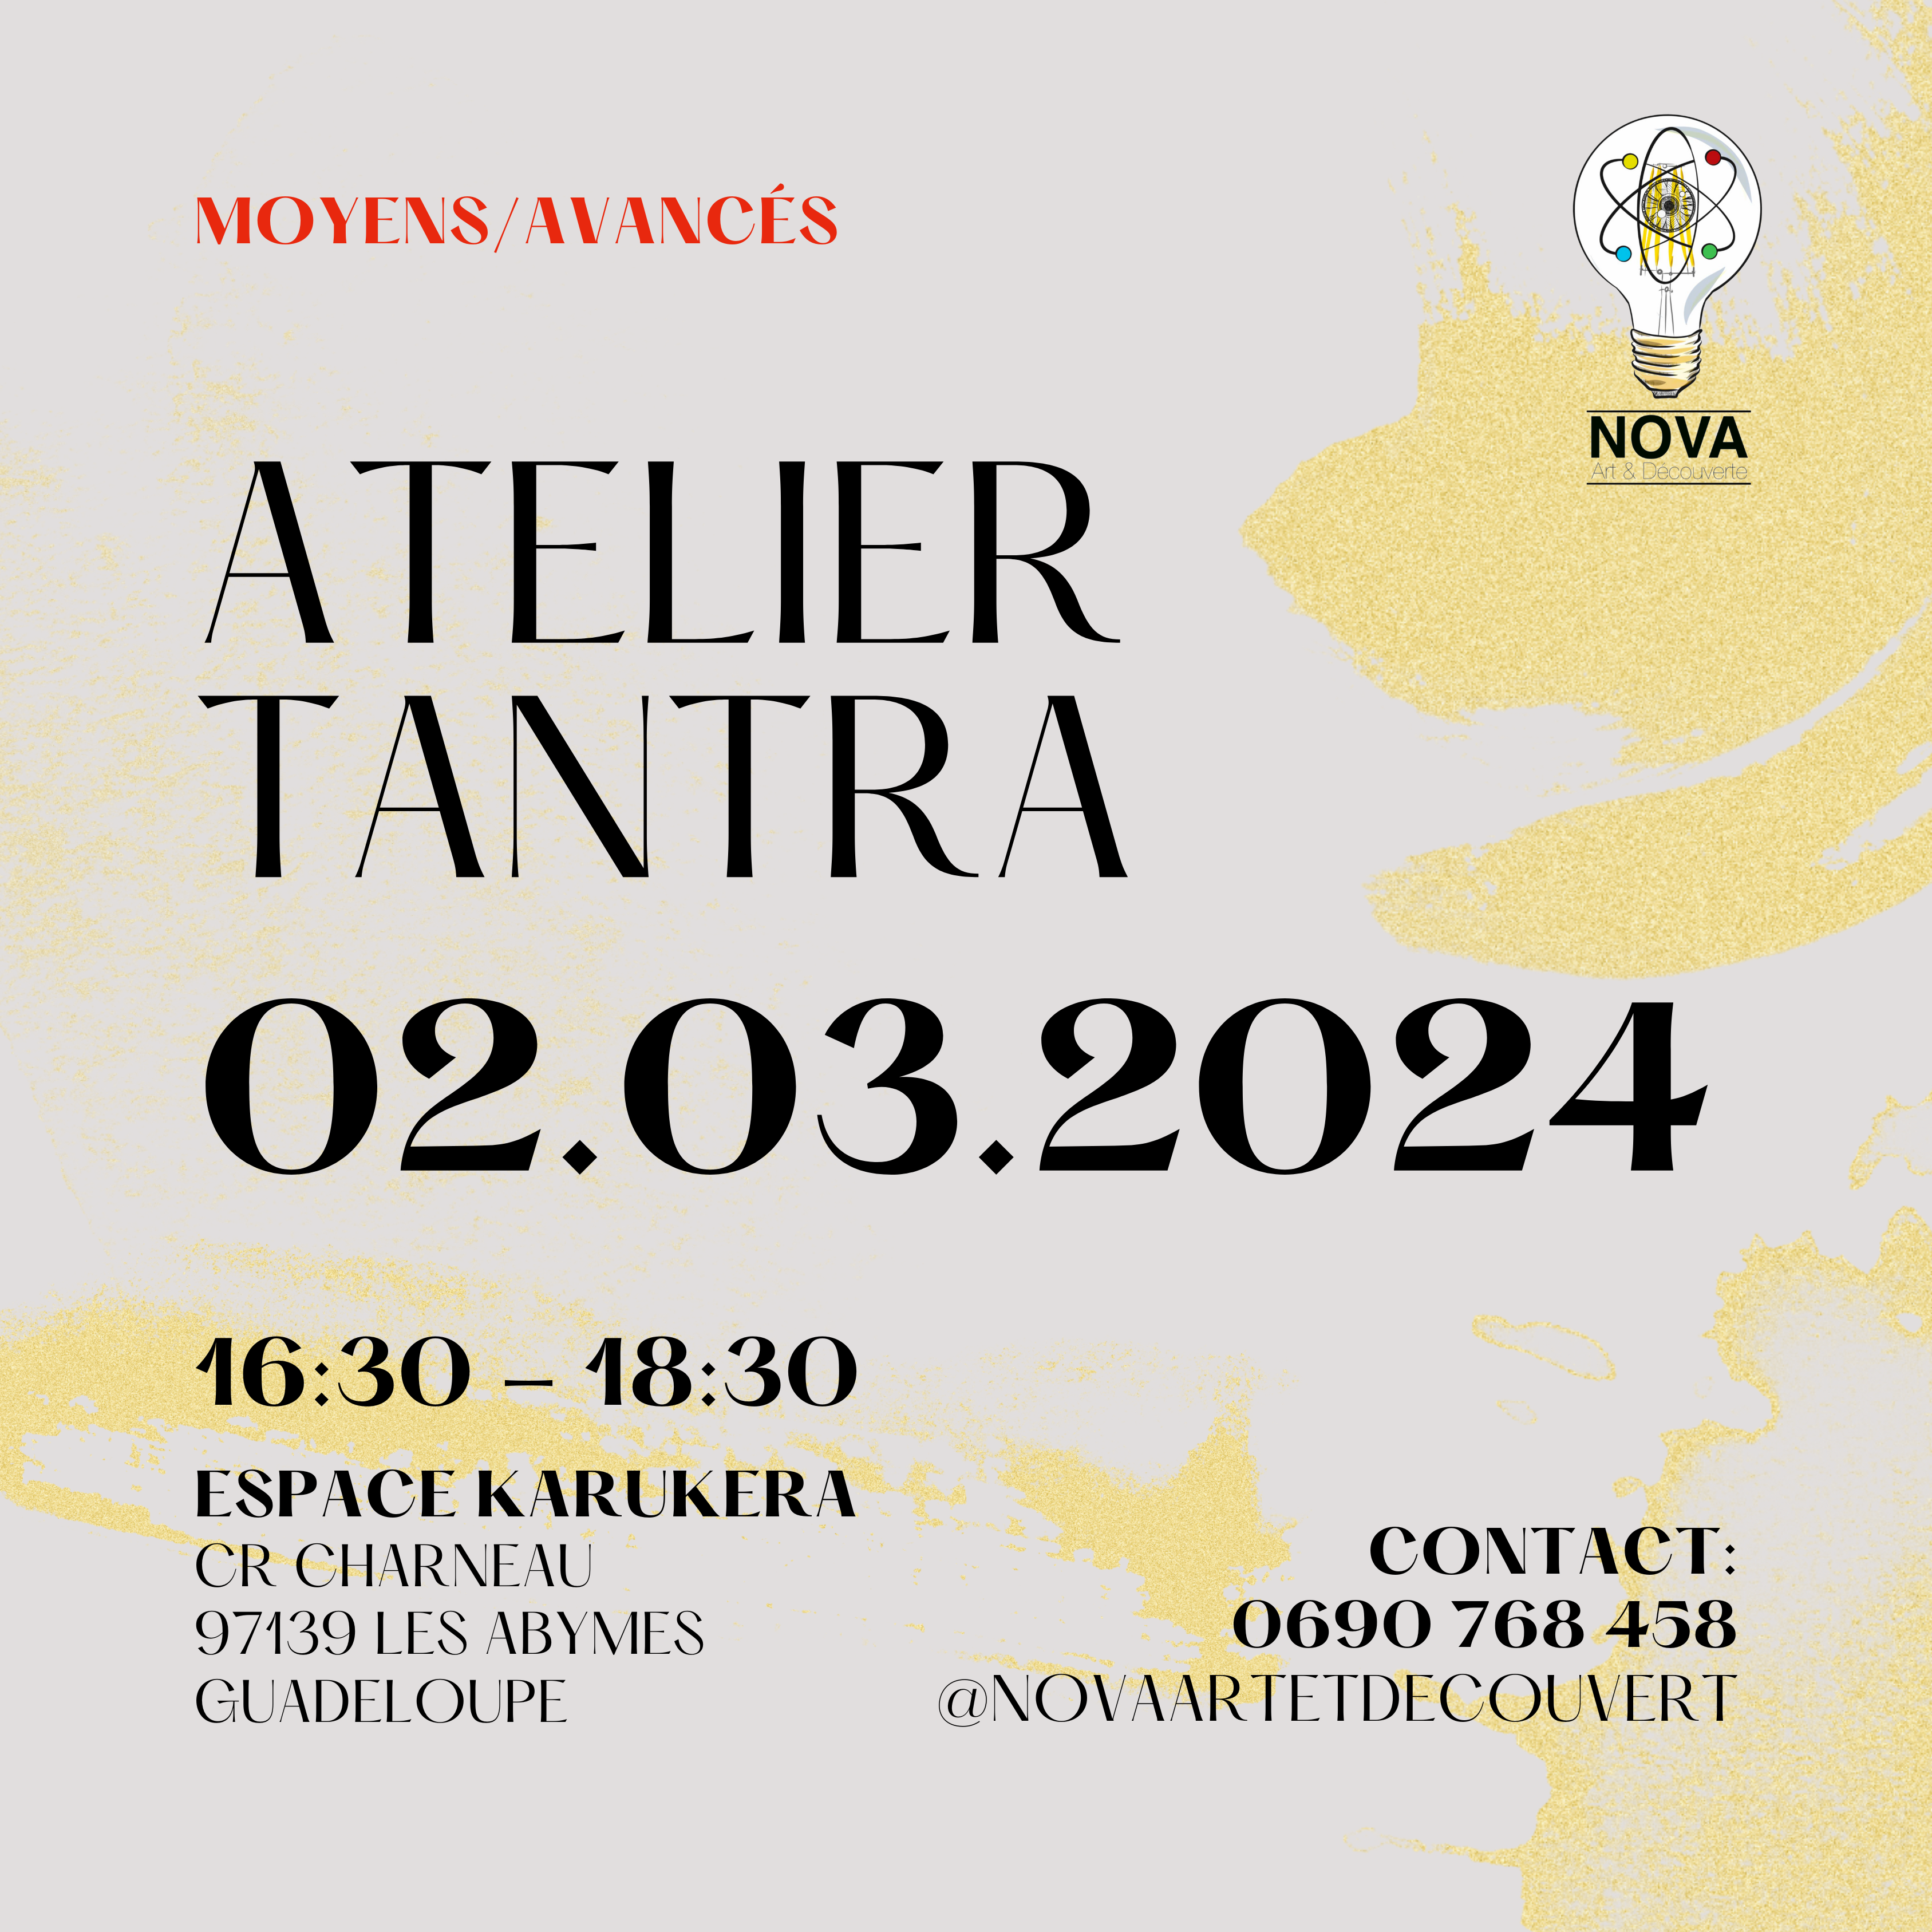 ATELIER TANTRA MOY./AVANCÉS ~ MARS 2024